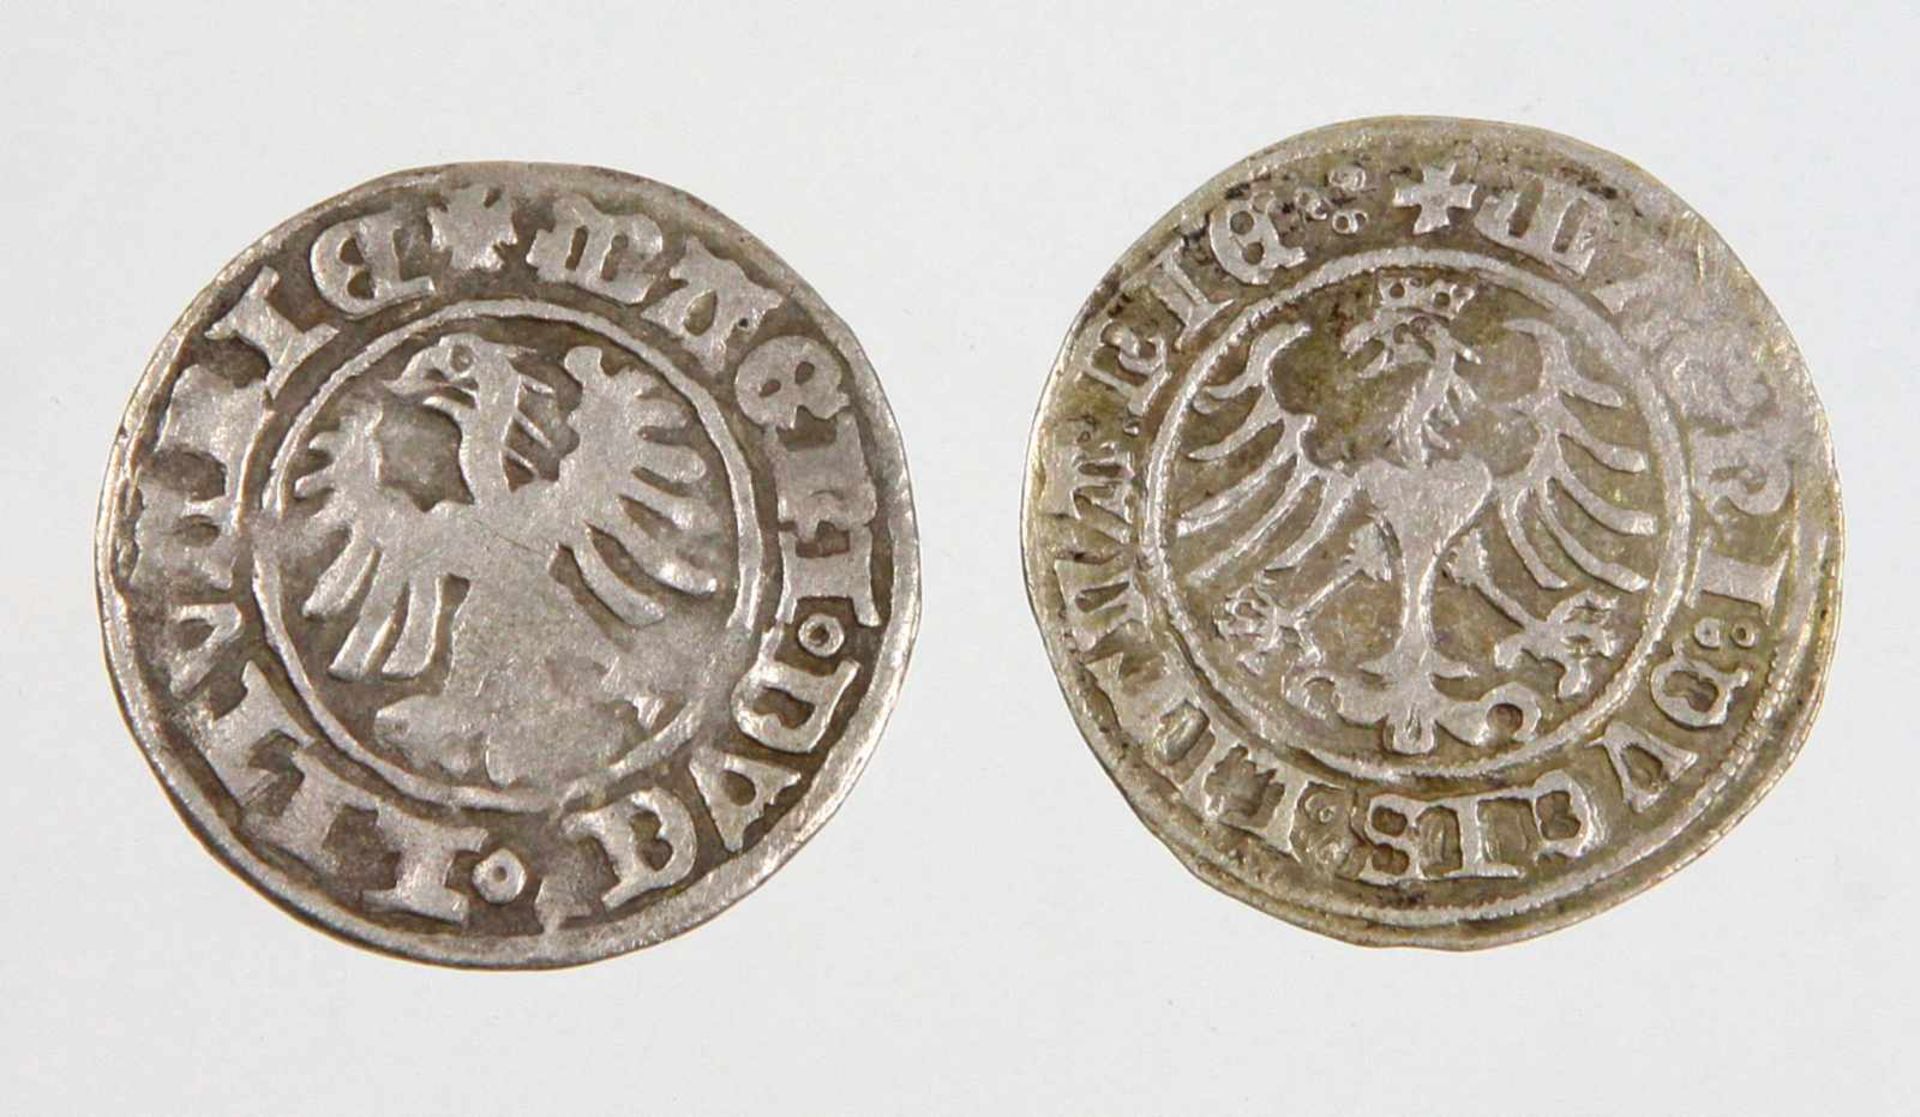 2 Halbgroschen Litauen 1501/06Baltikum, 2 x 1/2 Groschen o.J., Litauen Alexander 1501/06 - Bild 2 aus 2